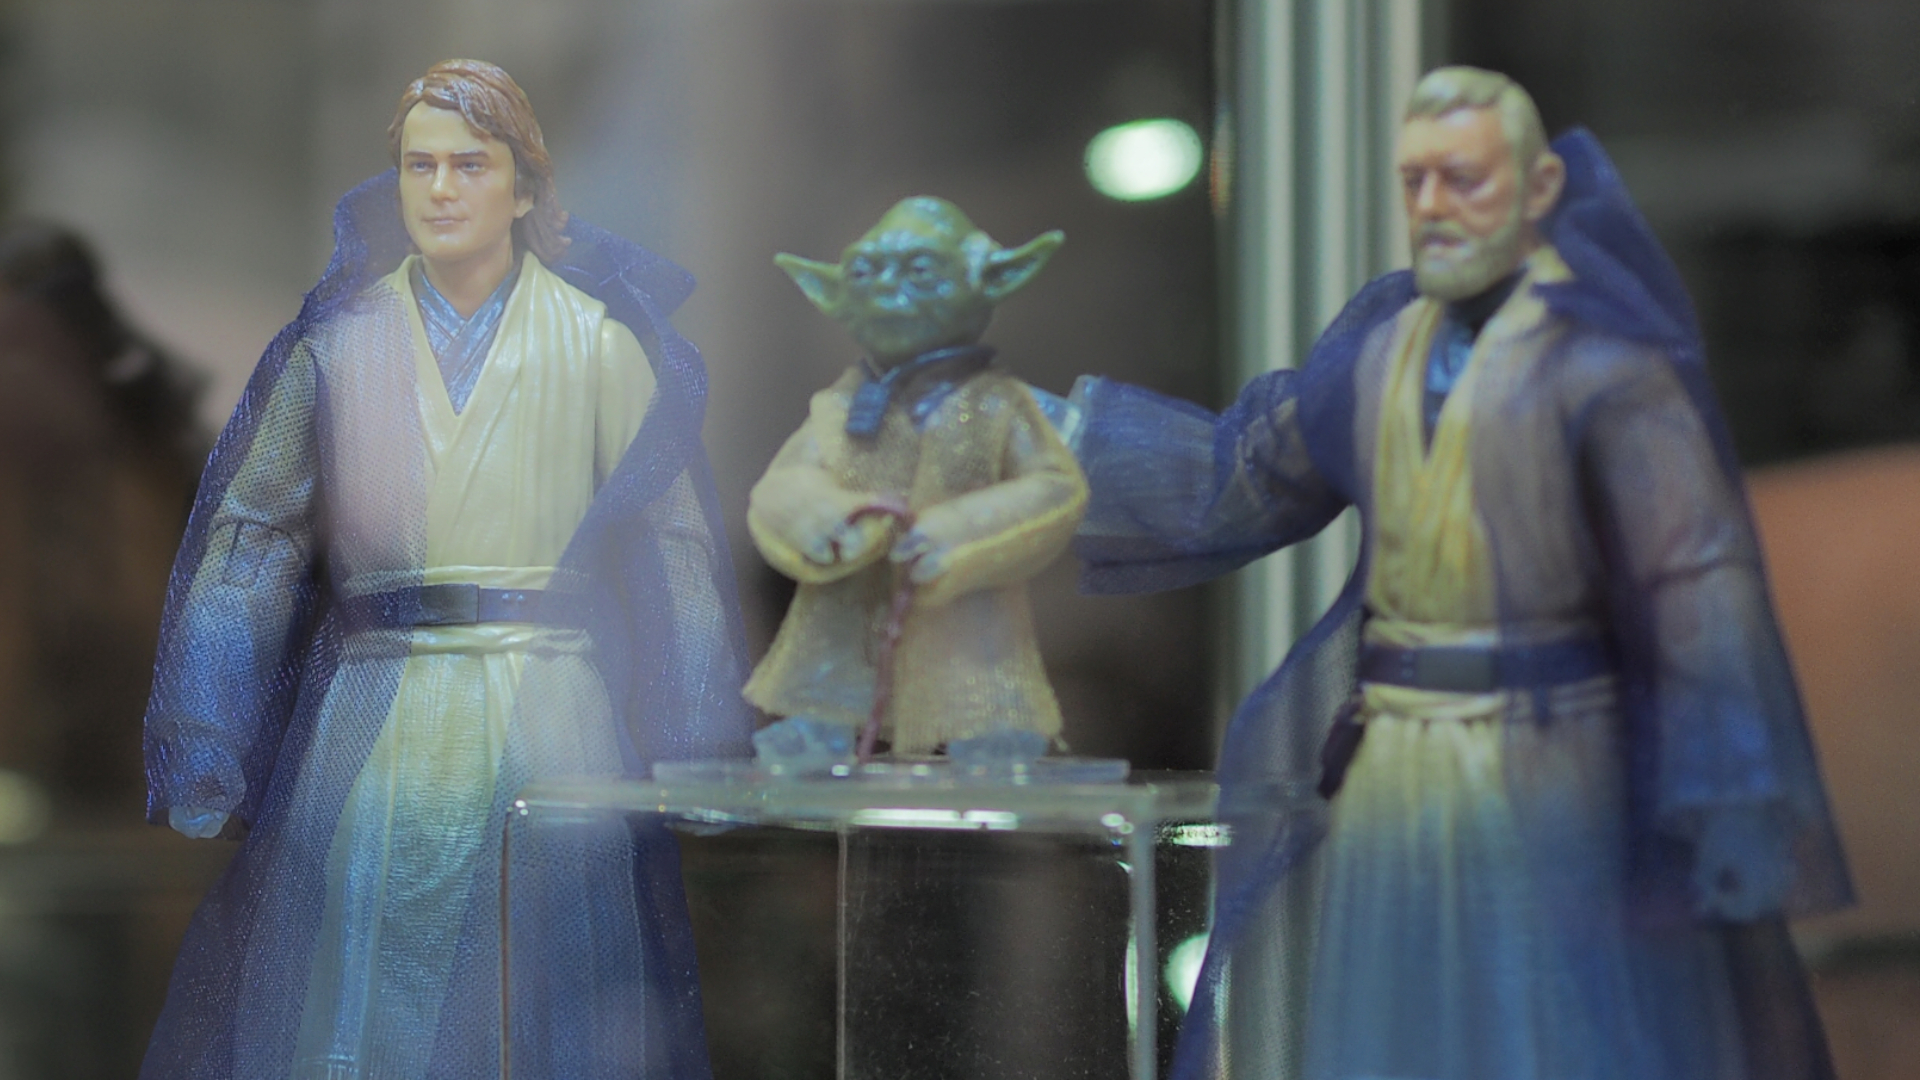 Las figuras de acción Force Ghost de Anakin, Yoda y Obi-Wan observan